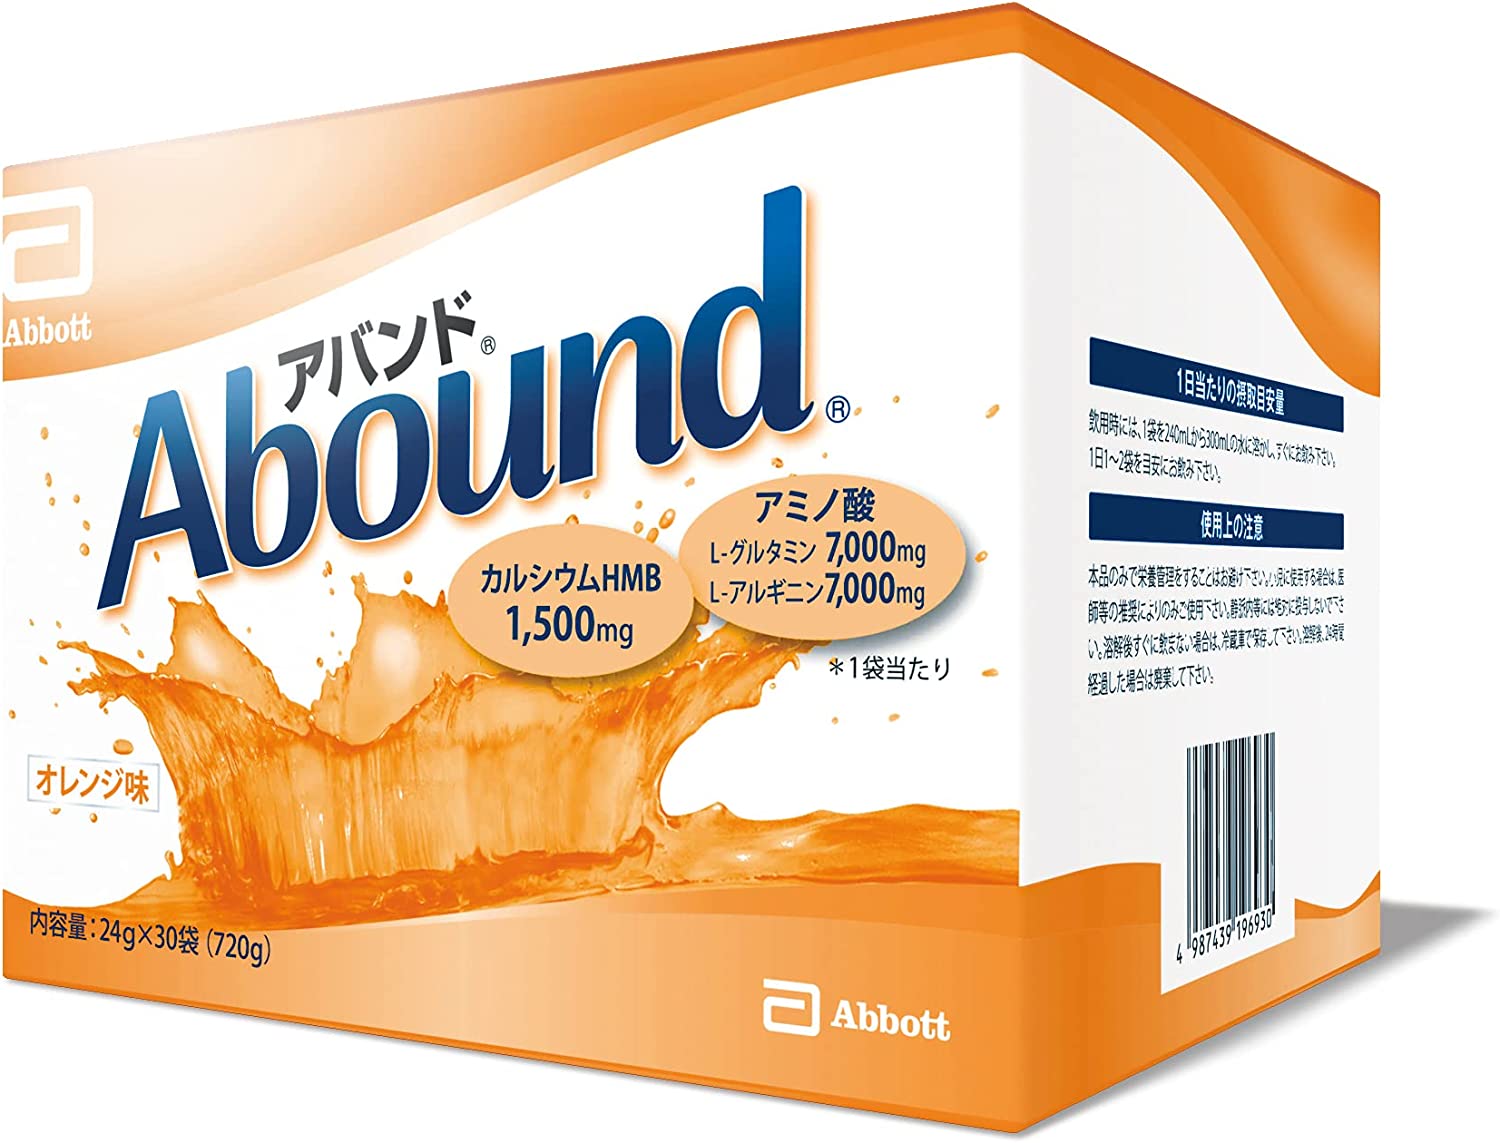 亞培(Abbott) abound Abound 胺基酸・鈣 橙味營養補充粉 24g×30袋